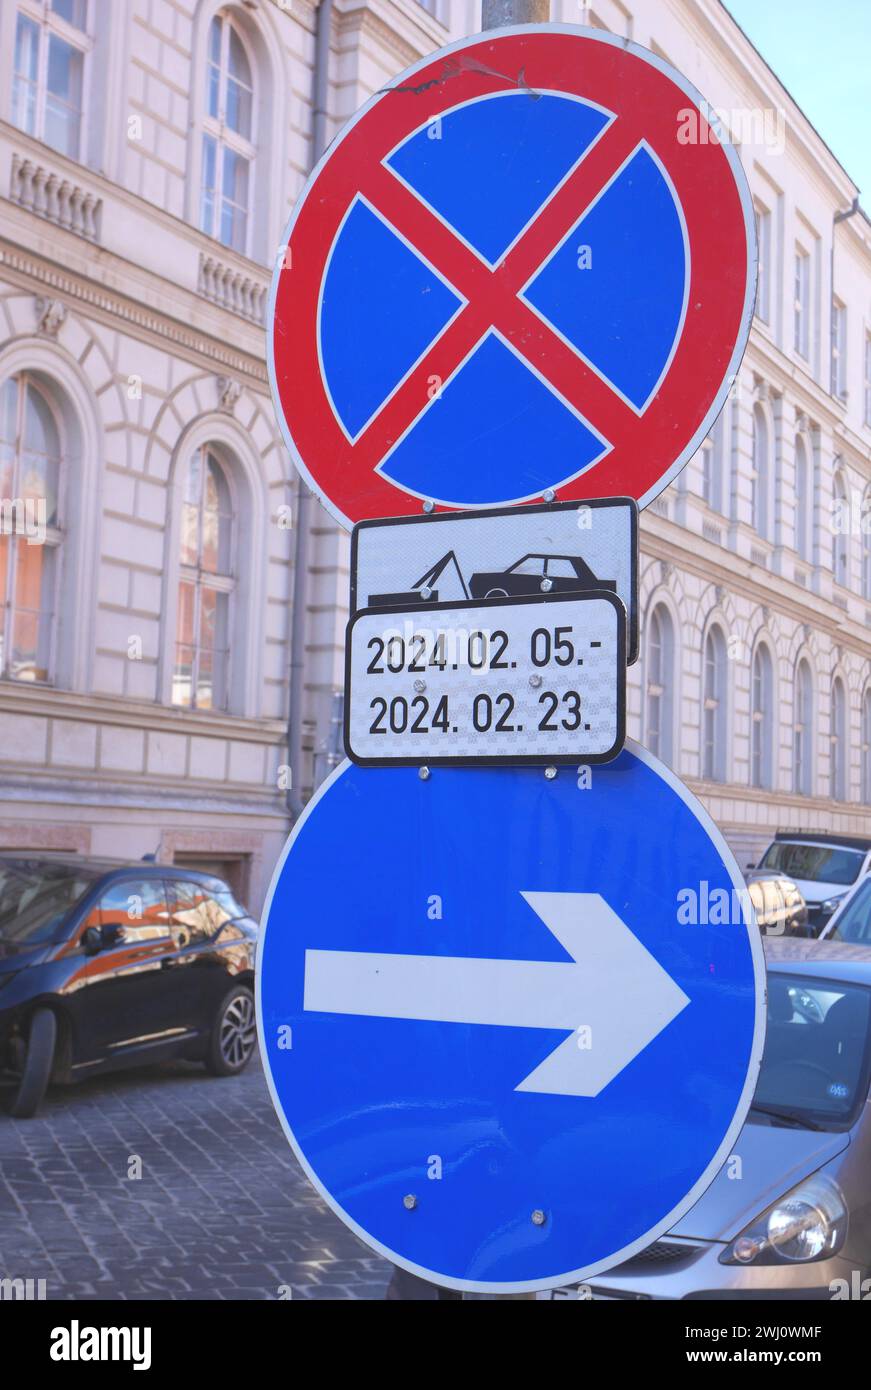 Pas de stationnement dates et heures désignées, et panneaux de virage à droite, quartier du château, Budapest, Hongrie Banque D'Images